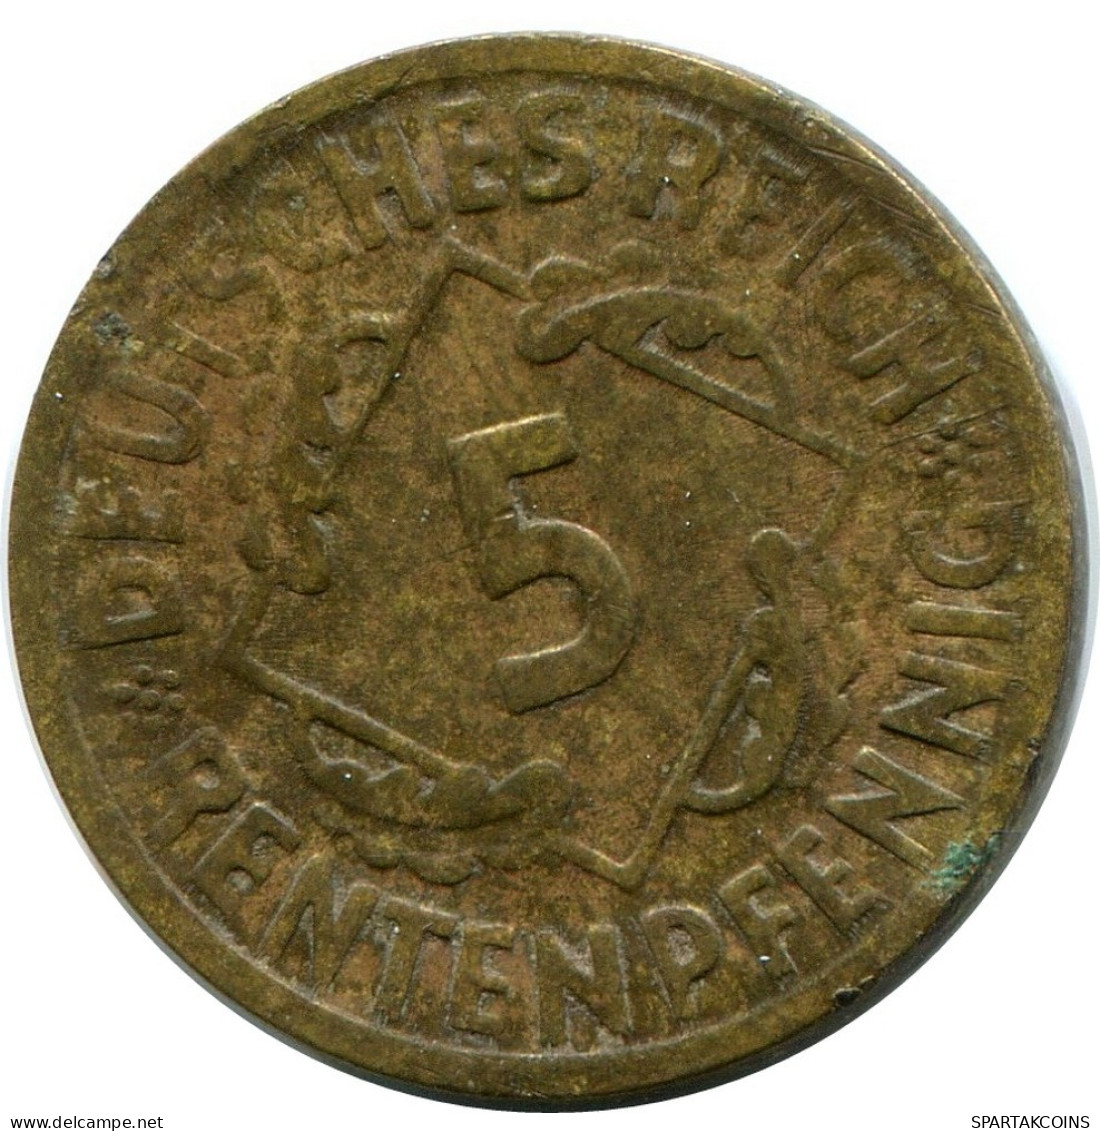 5 RENTENPFENNIG 1924 J ALEMANIA Moneda GERMANY #DB873.E.A - 5 Rentenpfennig & 5 Reichspfennig